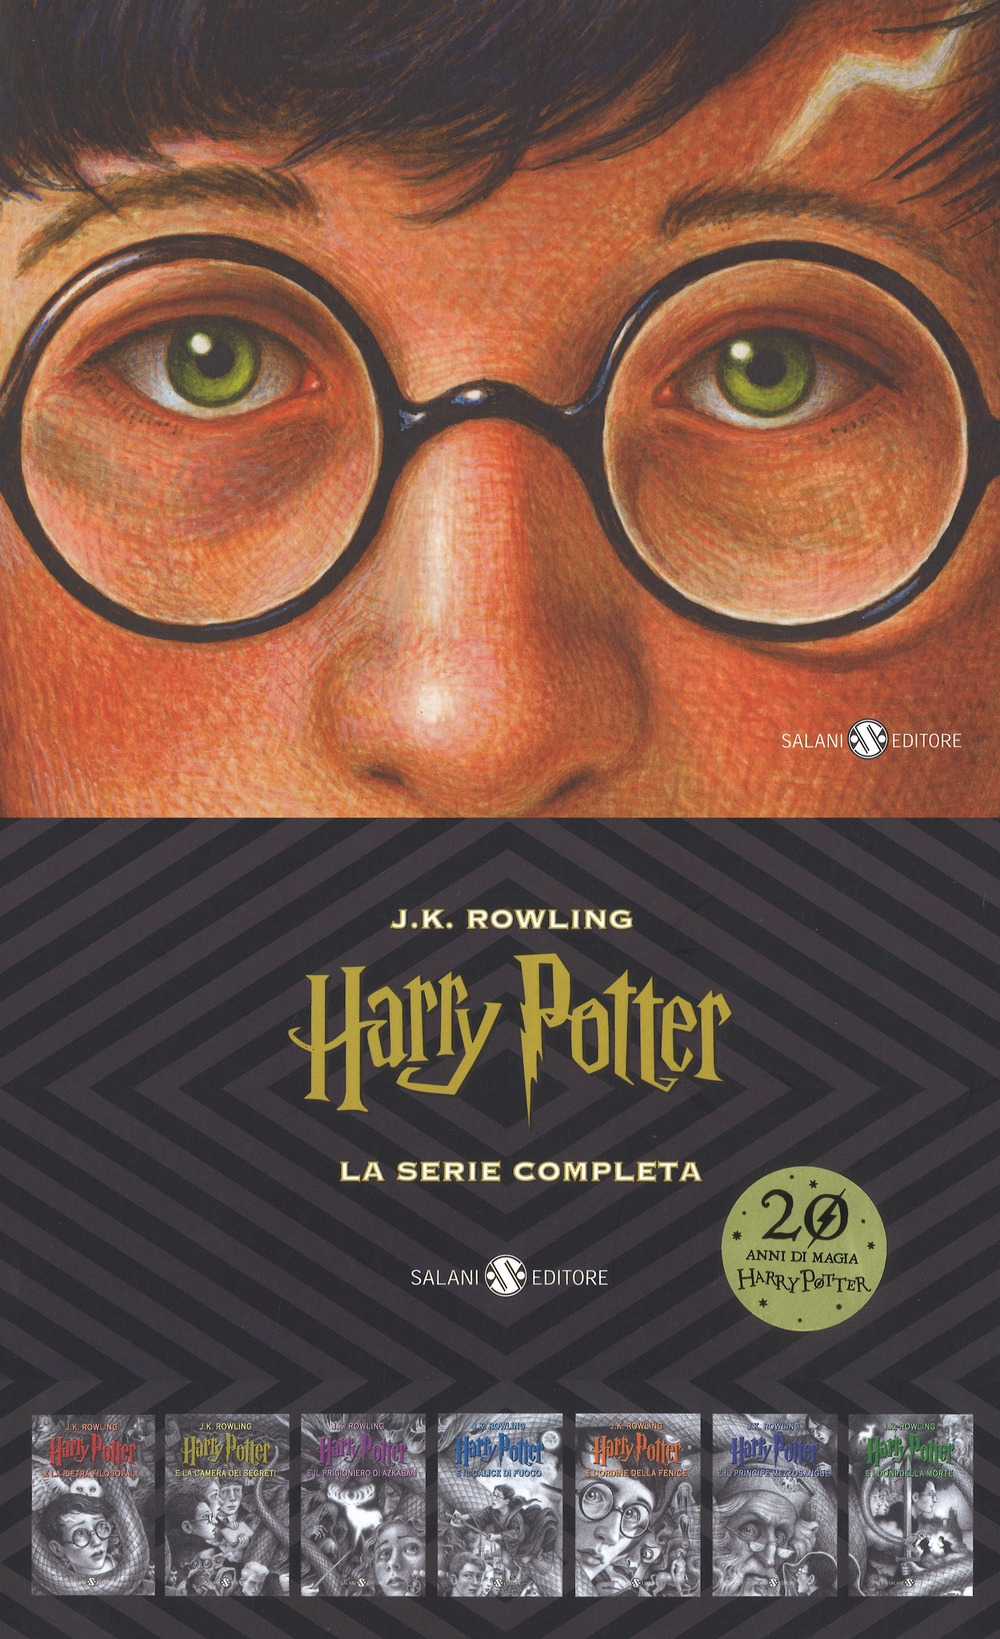 Harry Potter. La serie completa: Harry Potter e la pietra filosofale-Harry Potter e la camera dei segreti-Harry Potter e il prigioniero di Azkaban-Harry Potter e il calice di fuoco-Harry Potter e l'Ordine della Fenice-Harry Potter e il Principe Mezzosangu